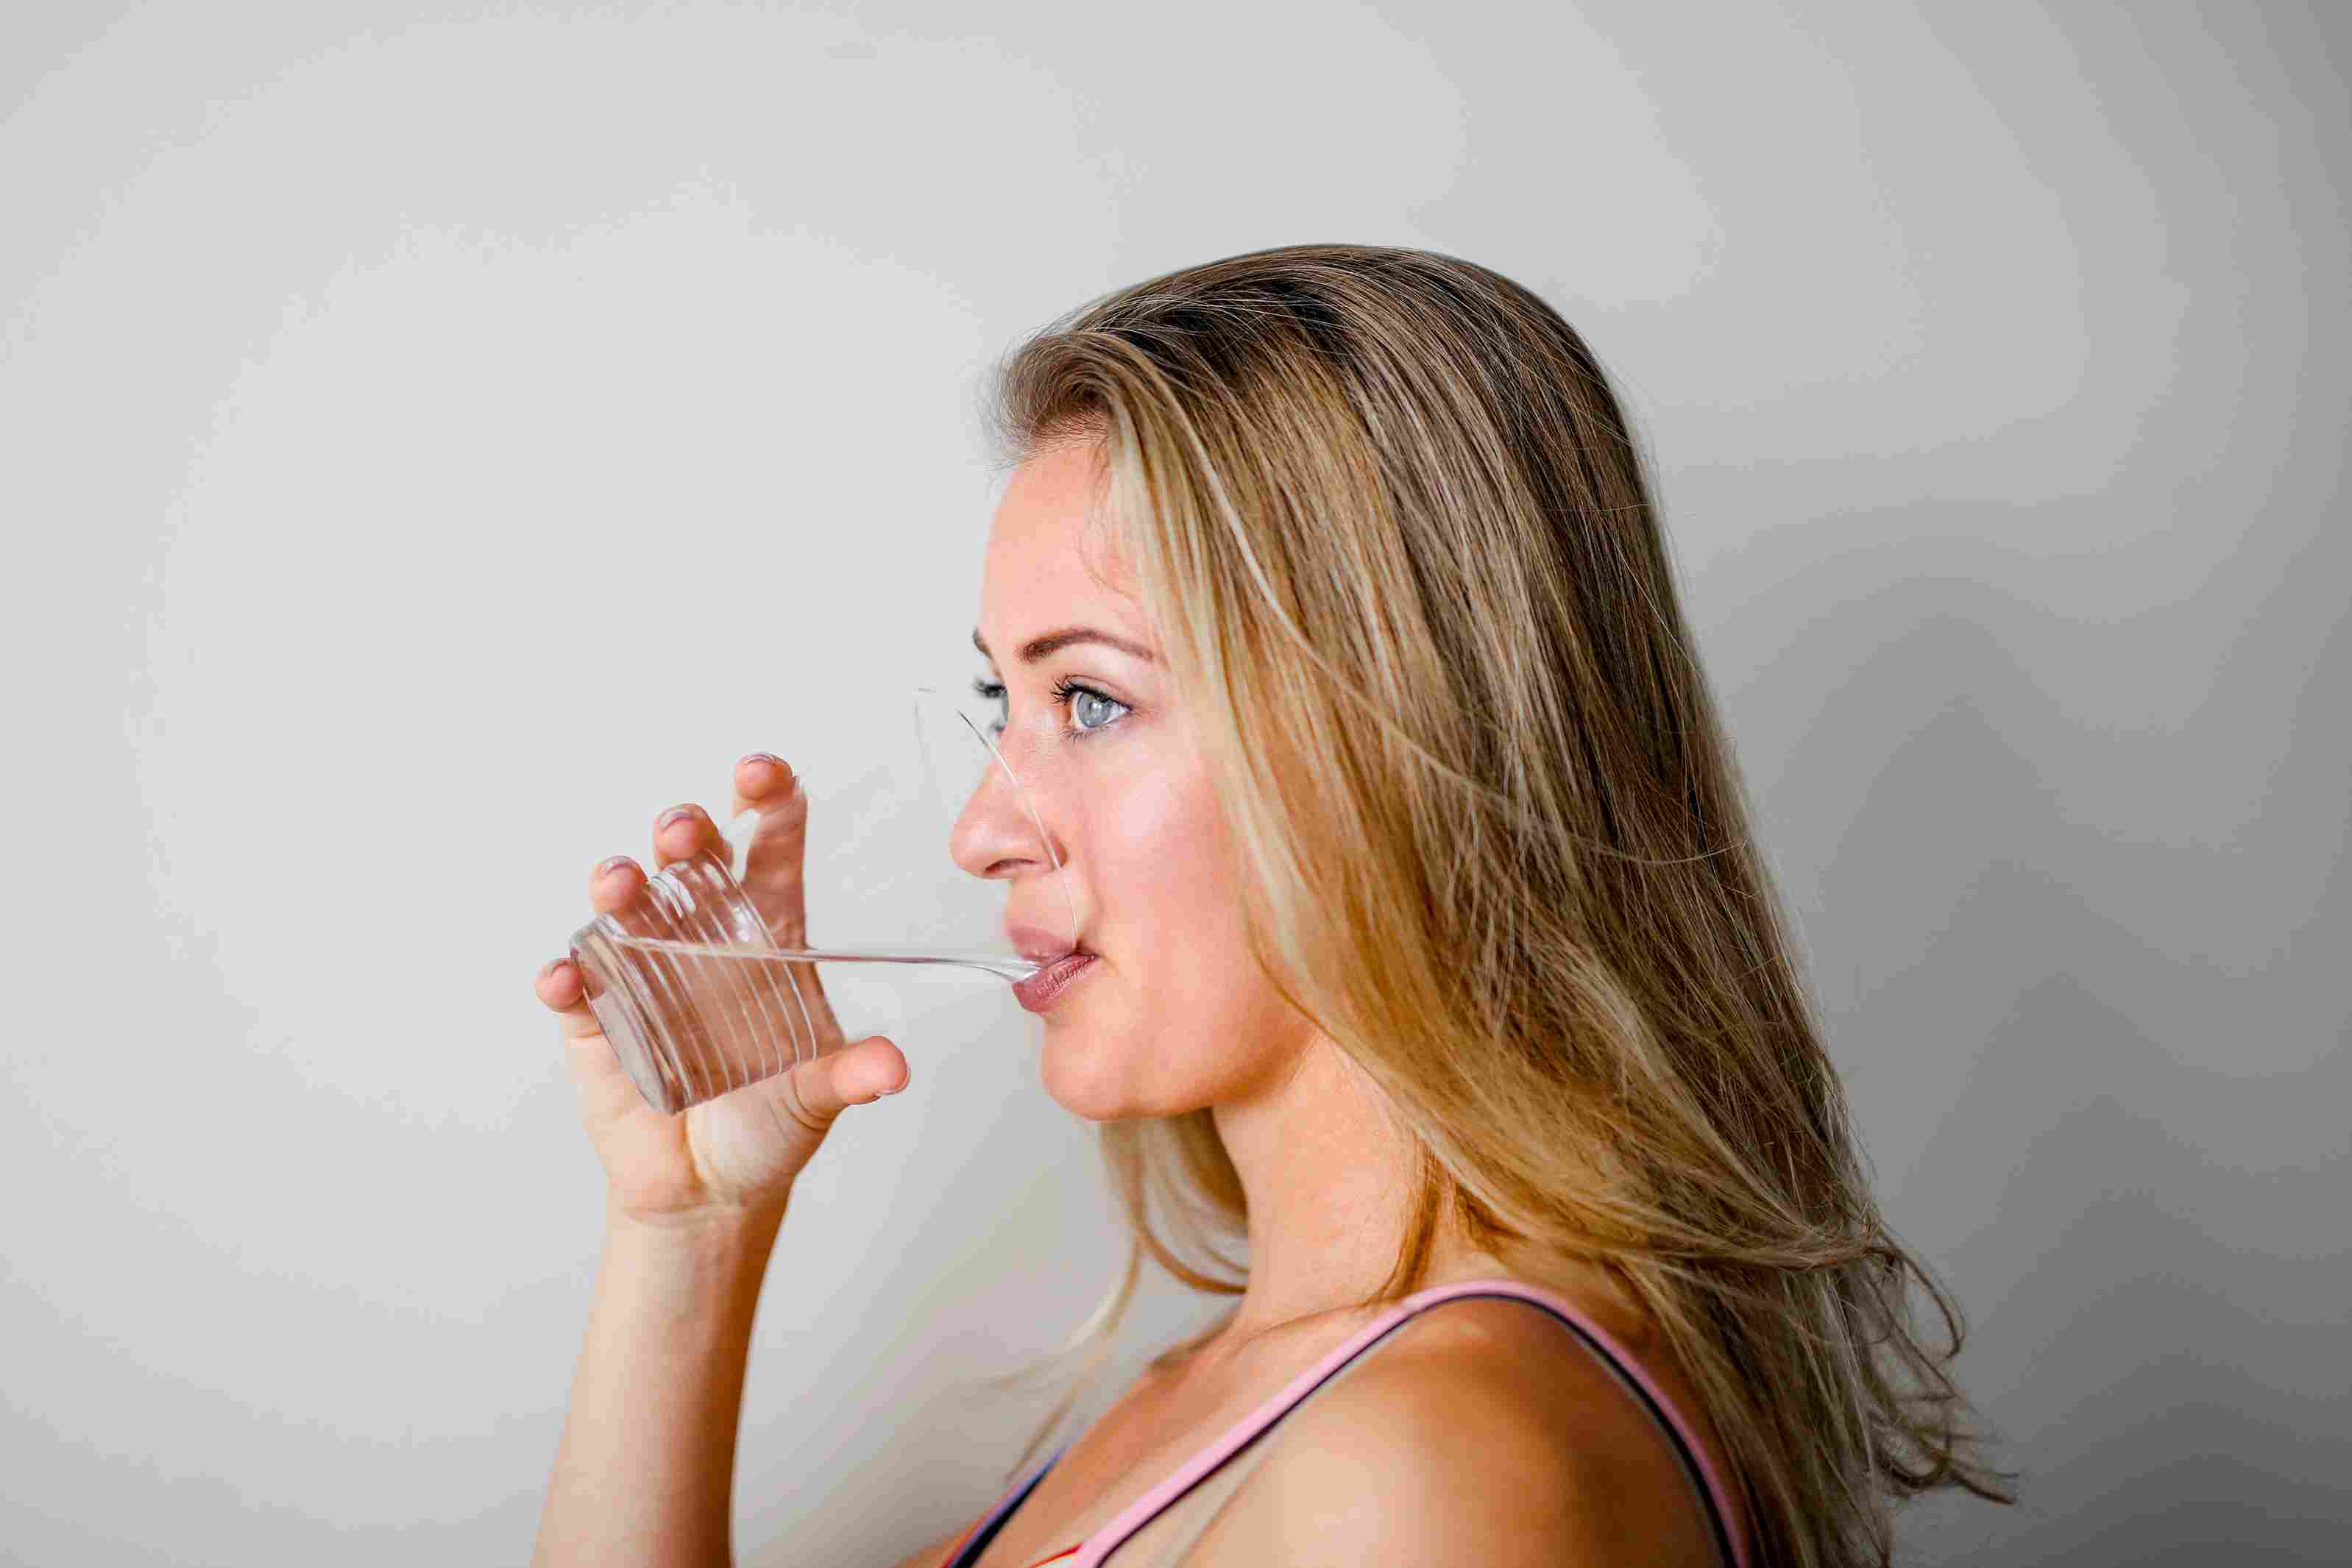 Minum air. Manfaat minum air putih. Cara menjaga kulit terhidrasi. Solusi kulit kering.